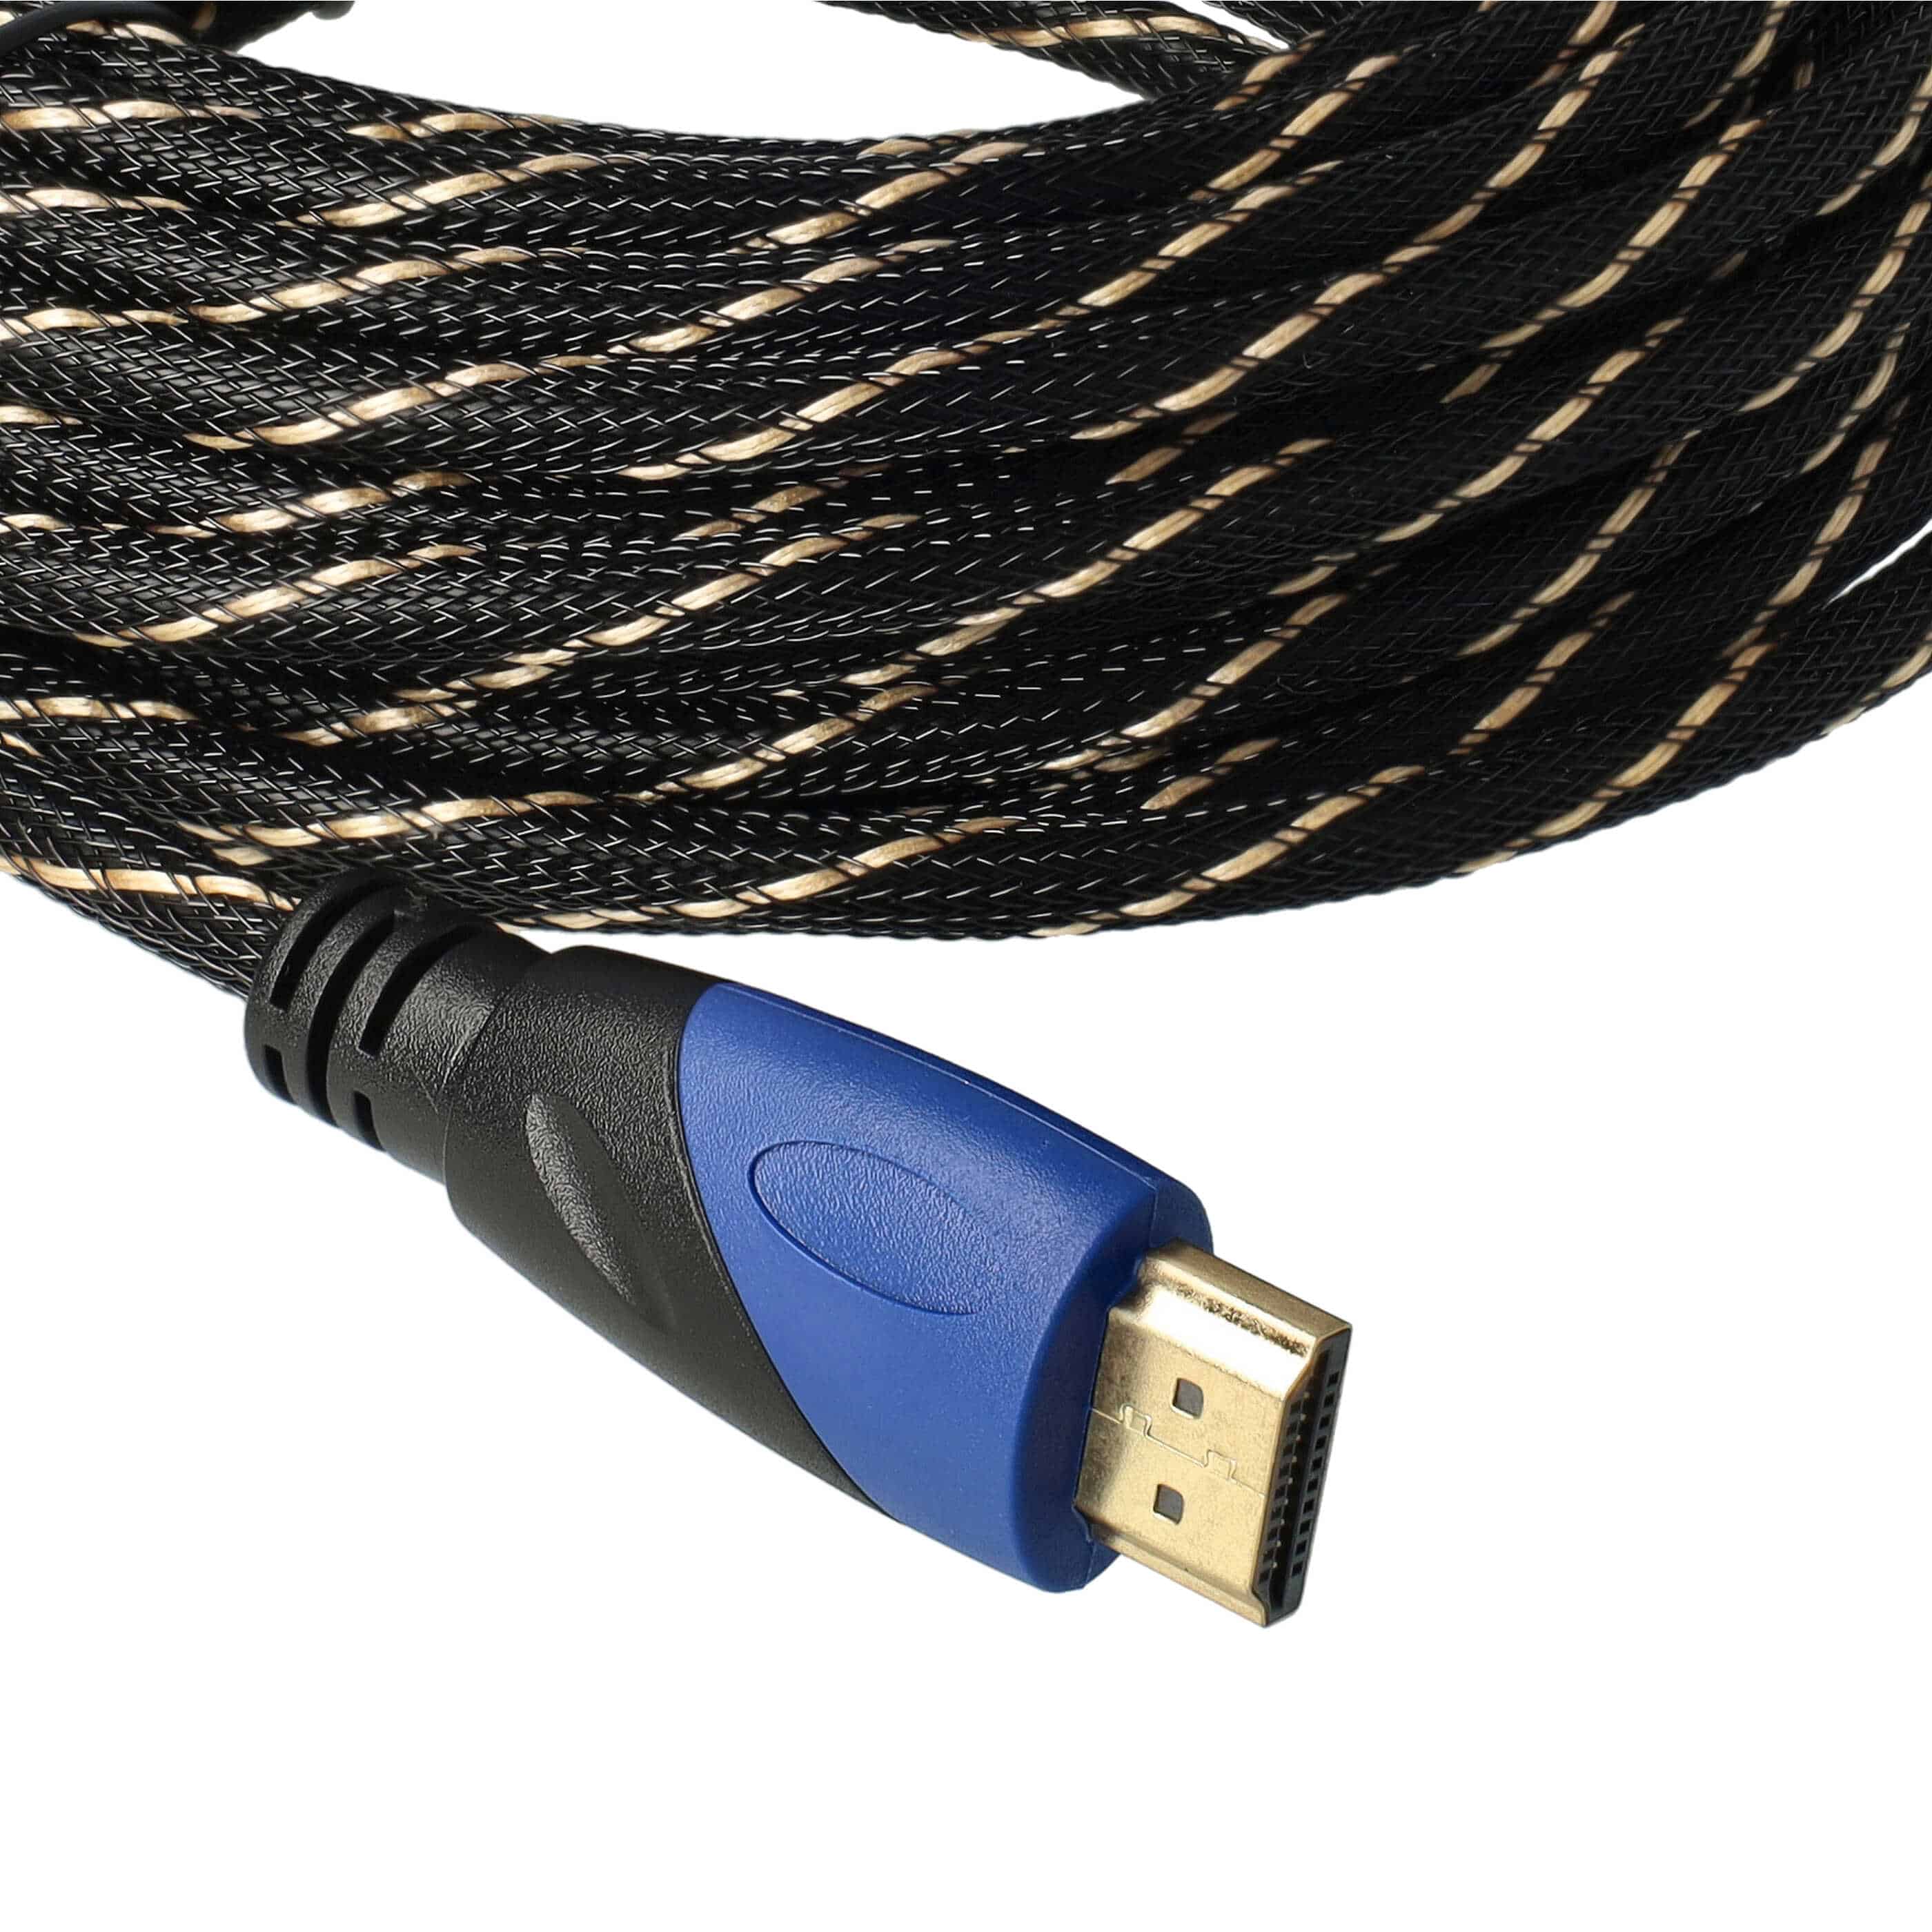 HDMI Kabel V1.4 High Speed geflochten 10m für Tablet, Fernseher, TV, Playstation, Computer, Monitor, DVD Playe